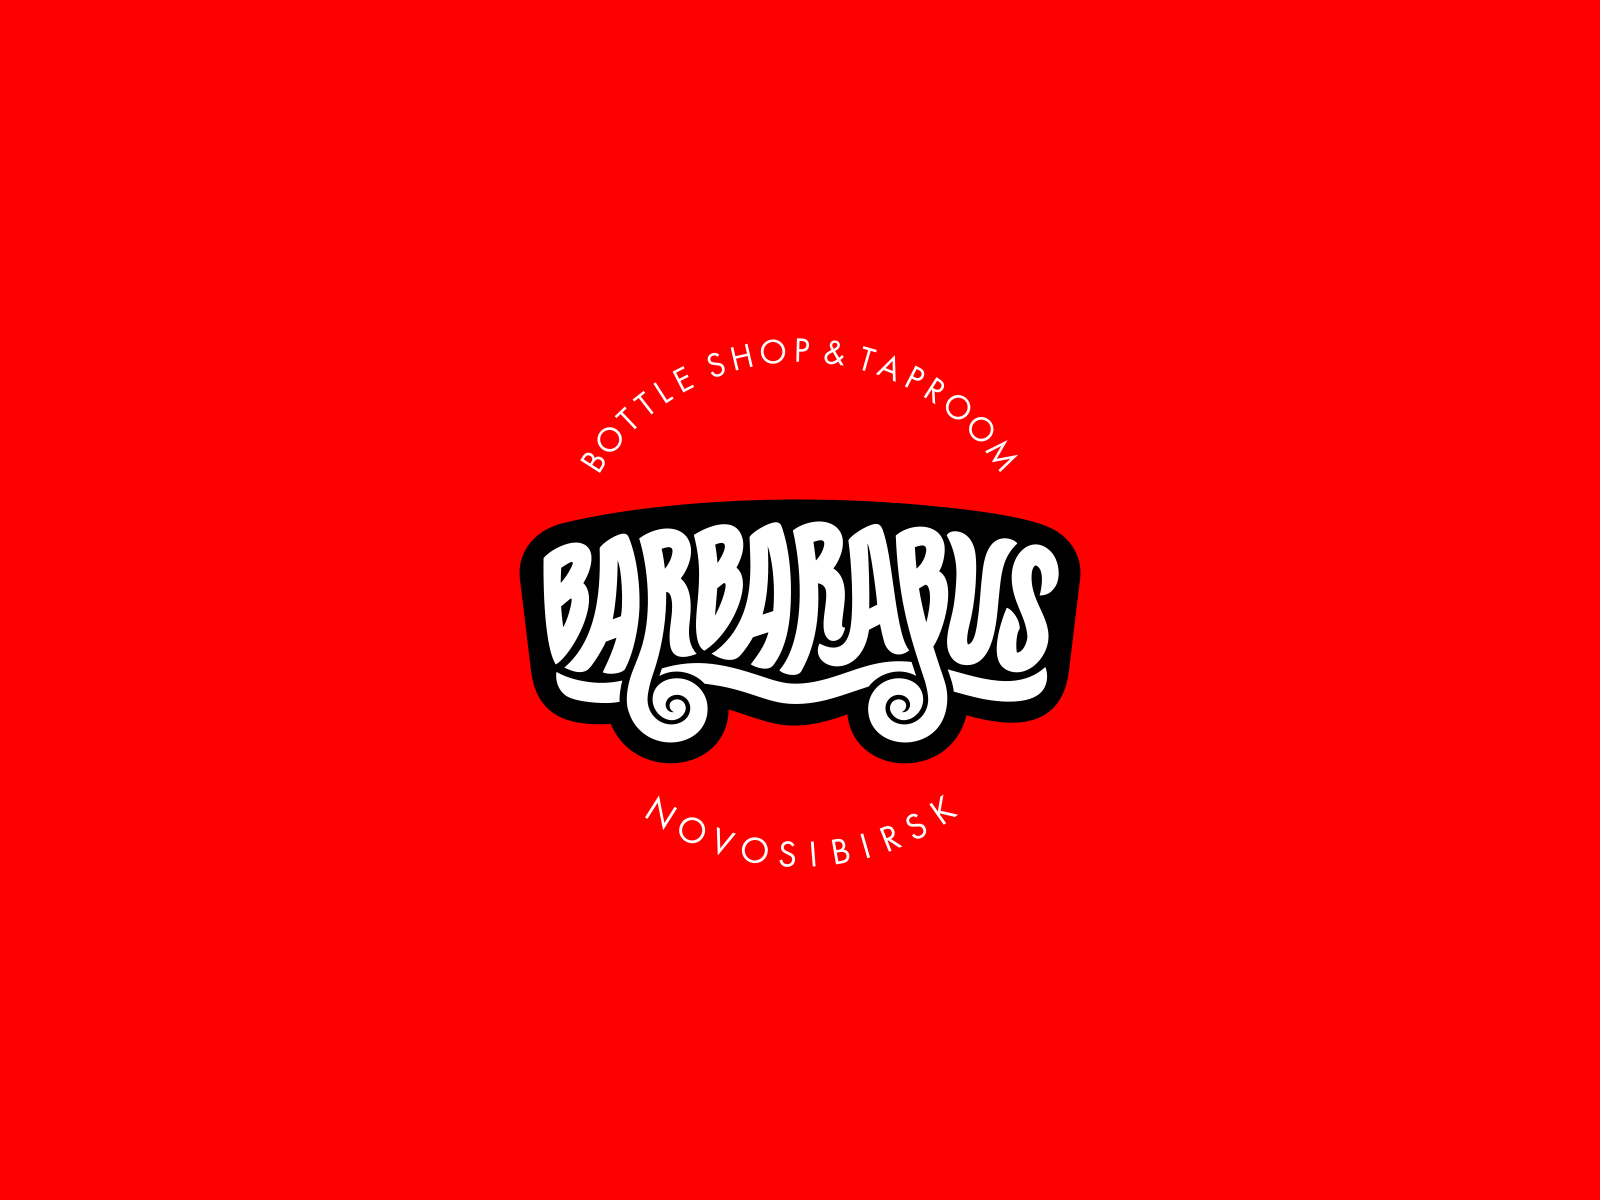 Barbarabus